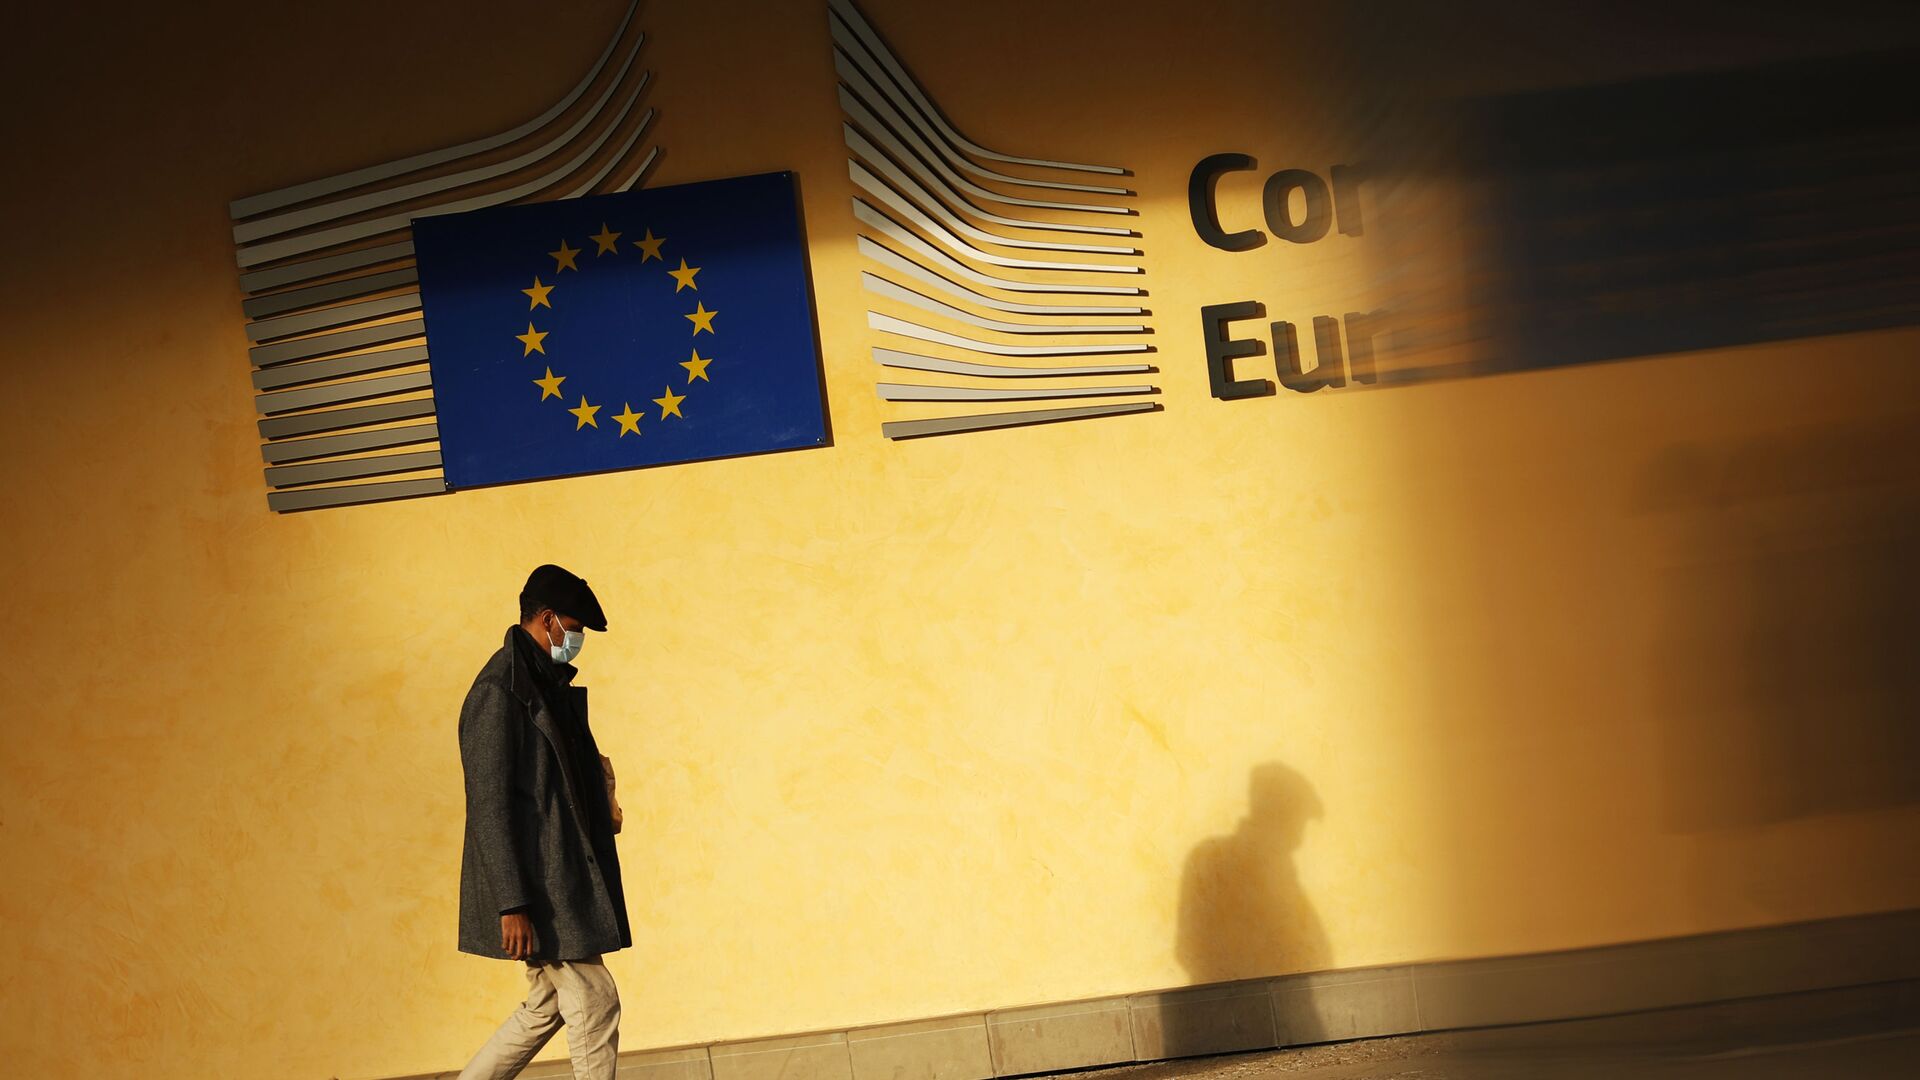 Тень человека падает на фасад штаб-квартиры ЕС в Брюсселе - Sputnik Молдова, 1920, 25.11.2021